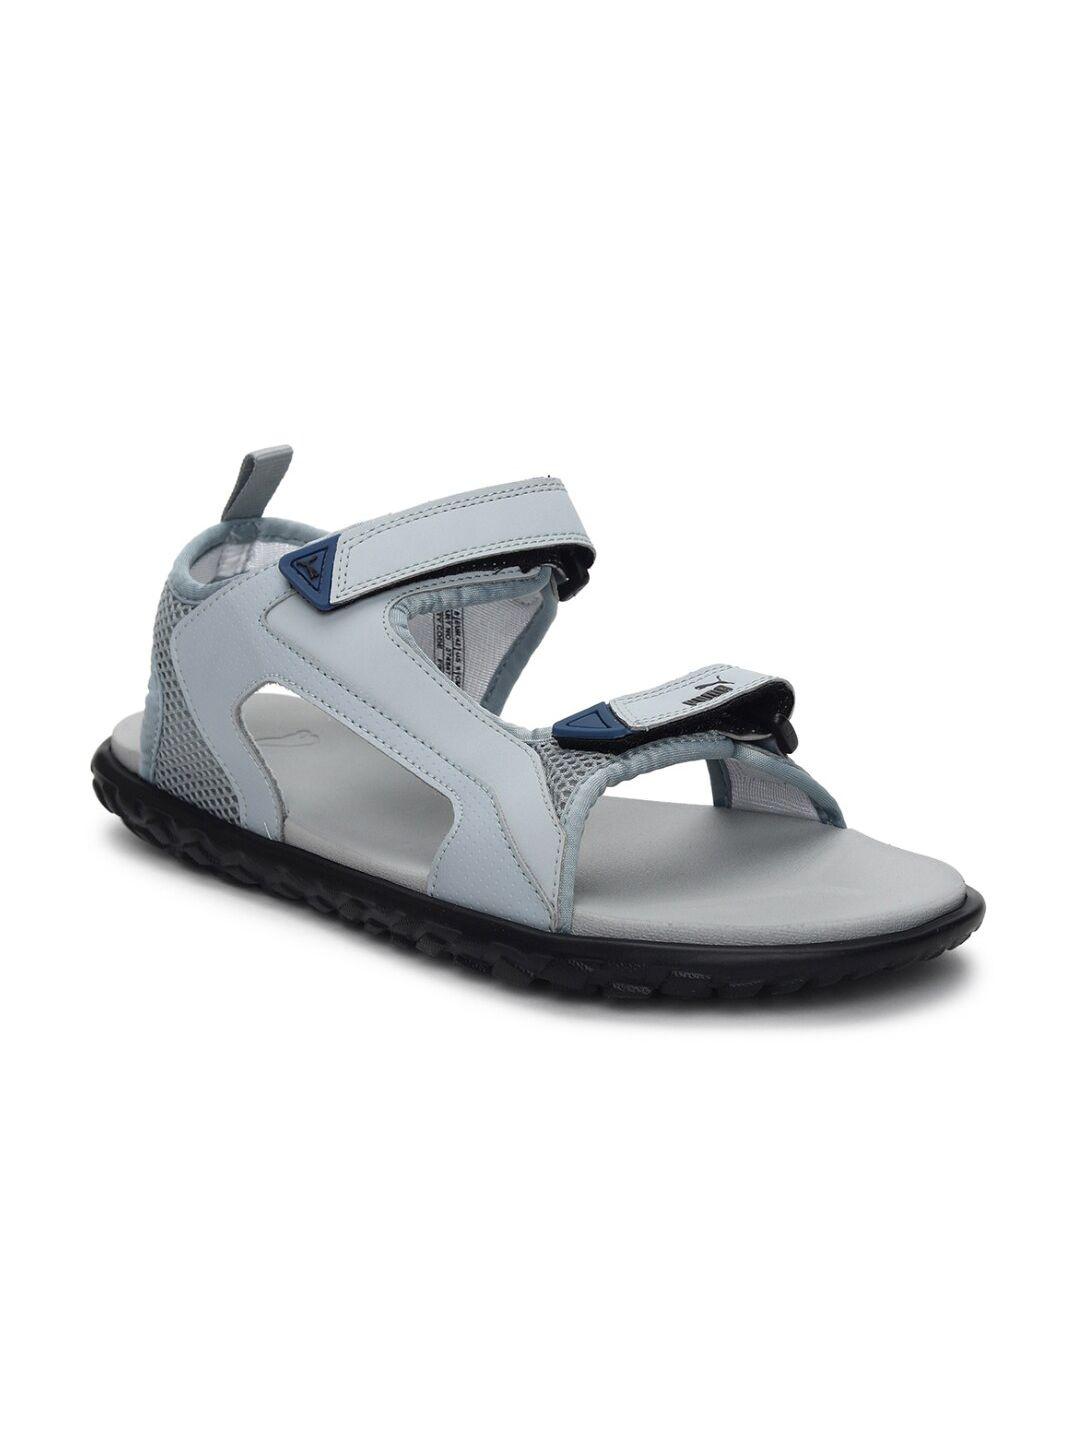 puma-unisex-grey-comfort-sandals